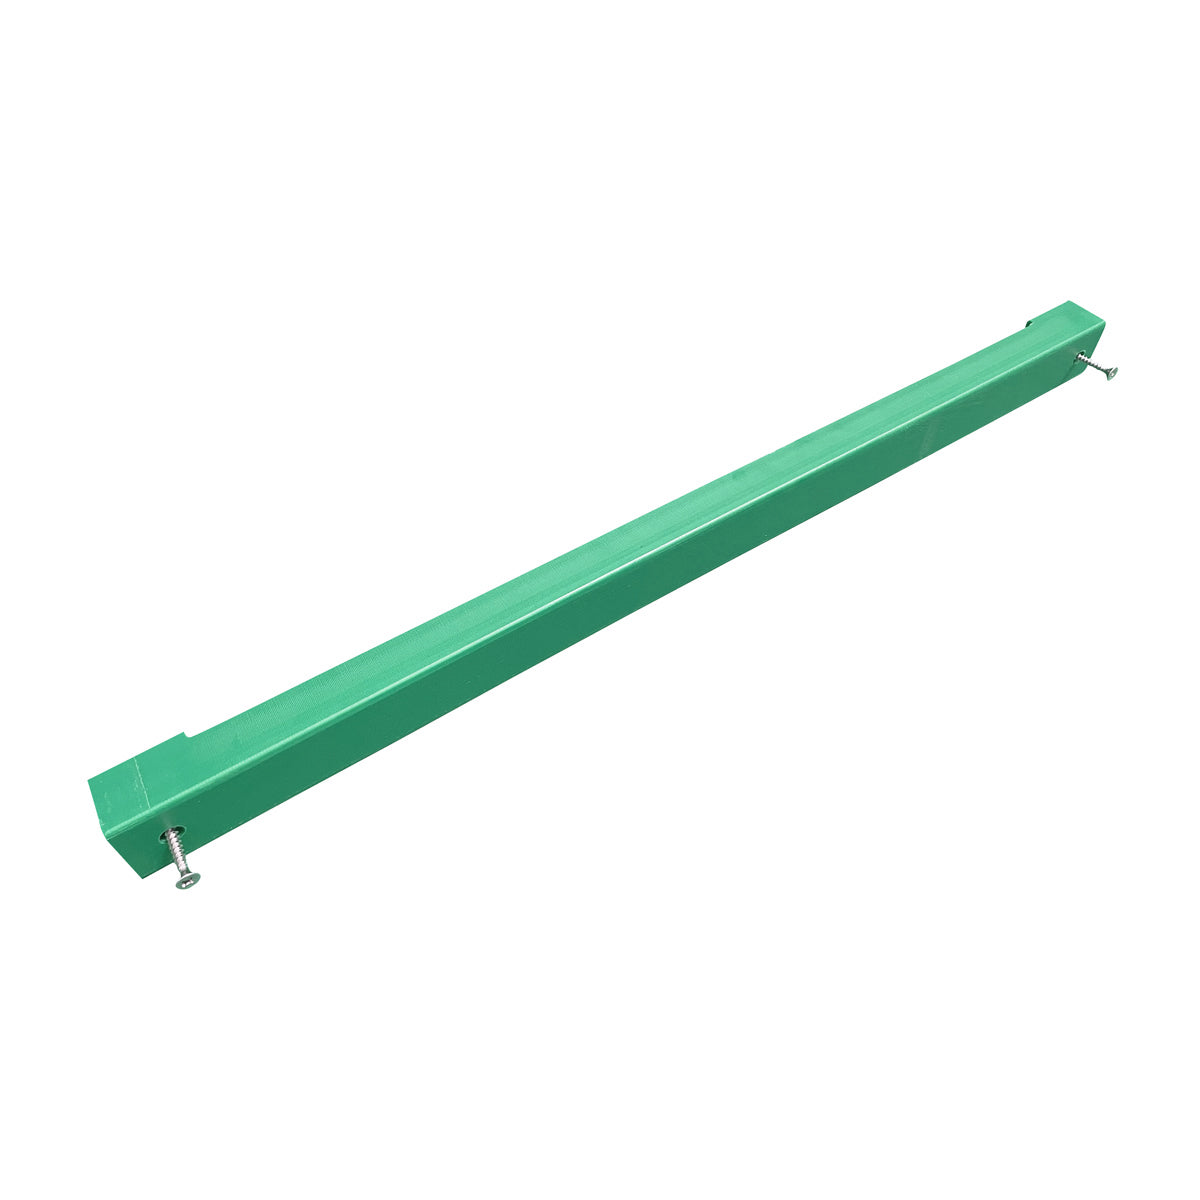 Knivholder til skjærebrett - 80 cm - grønn